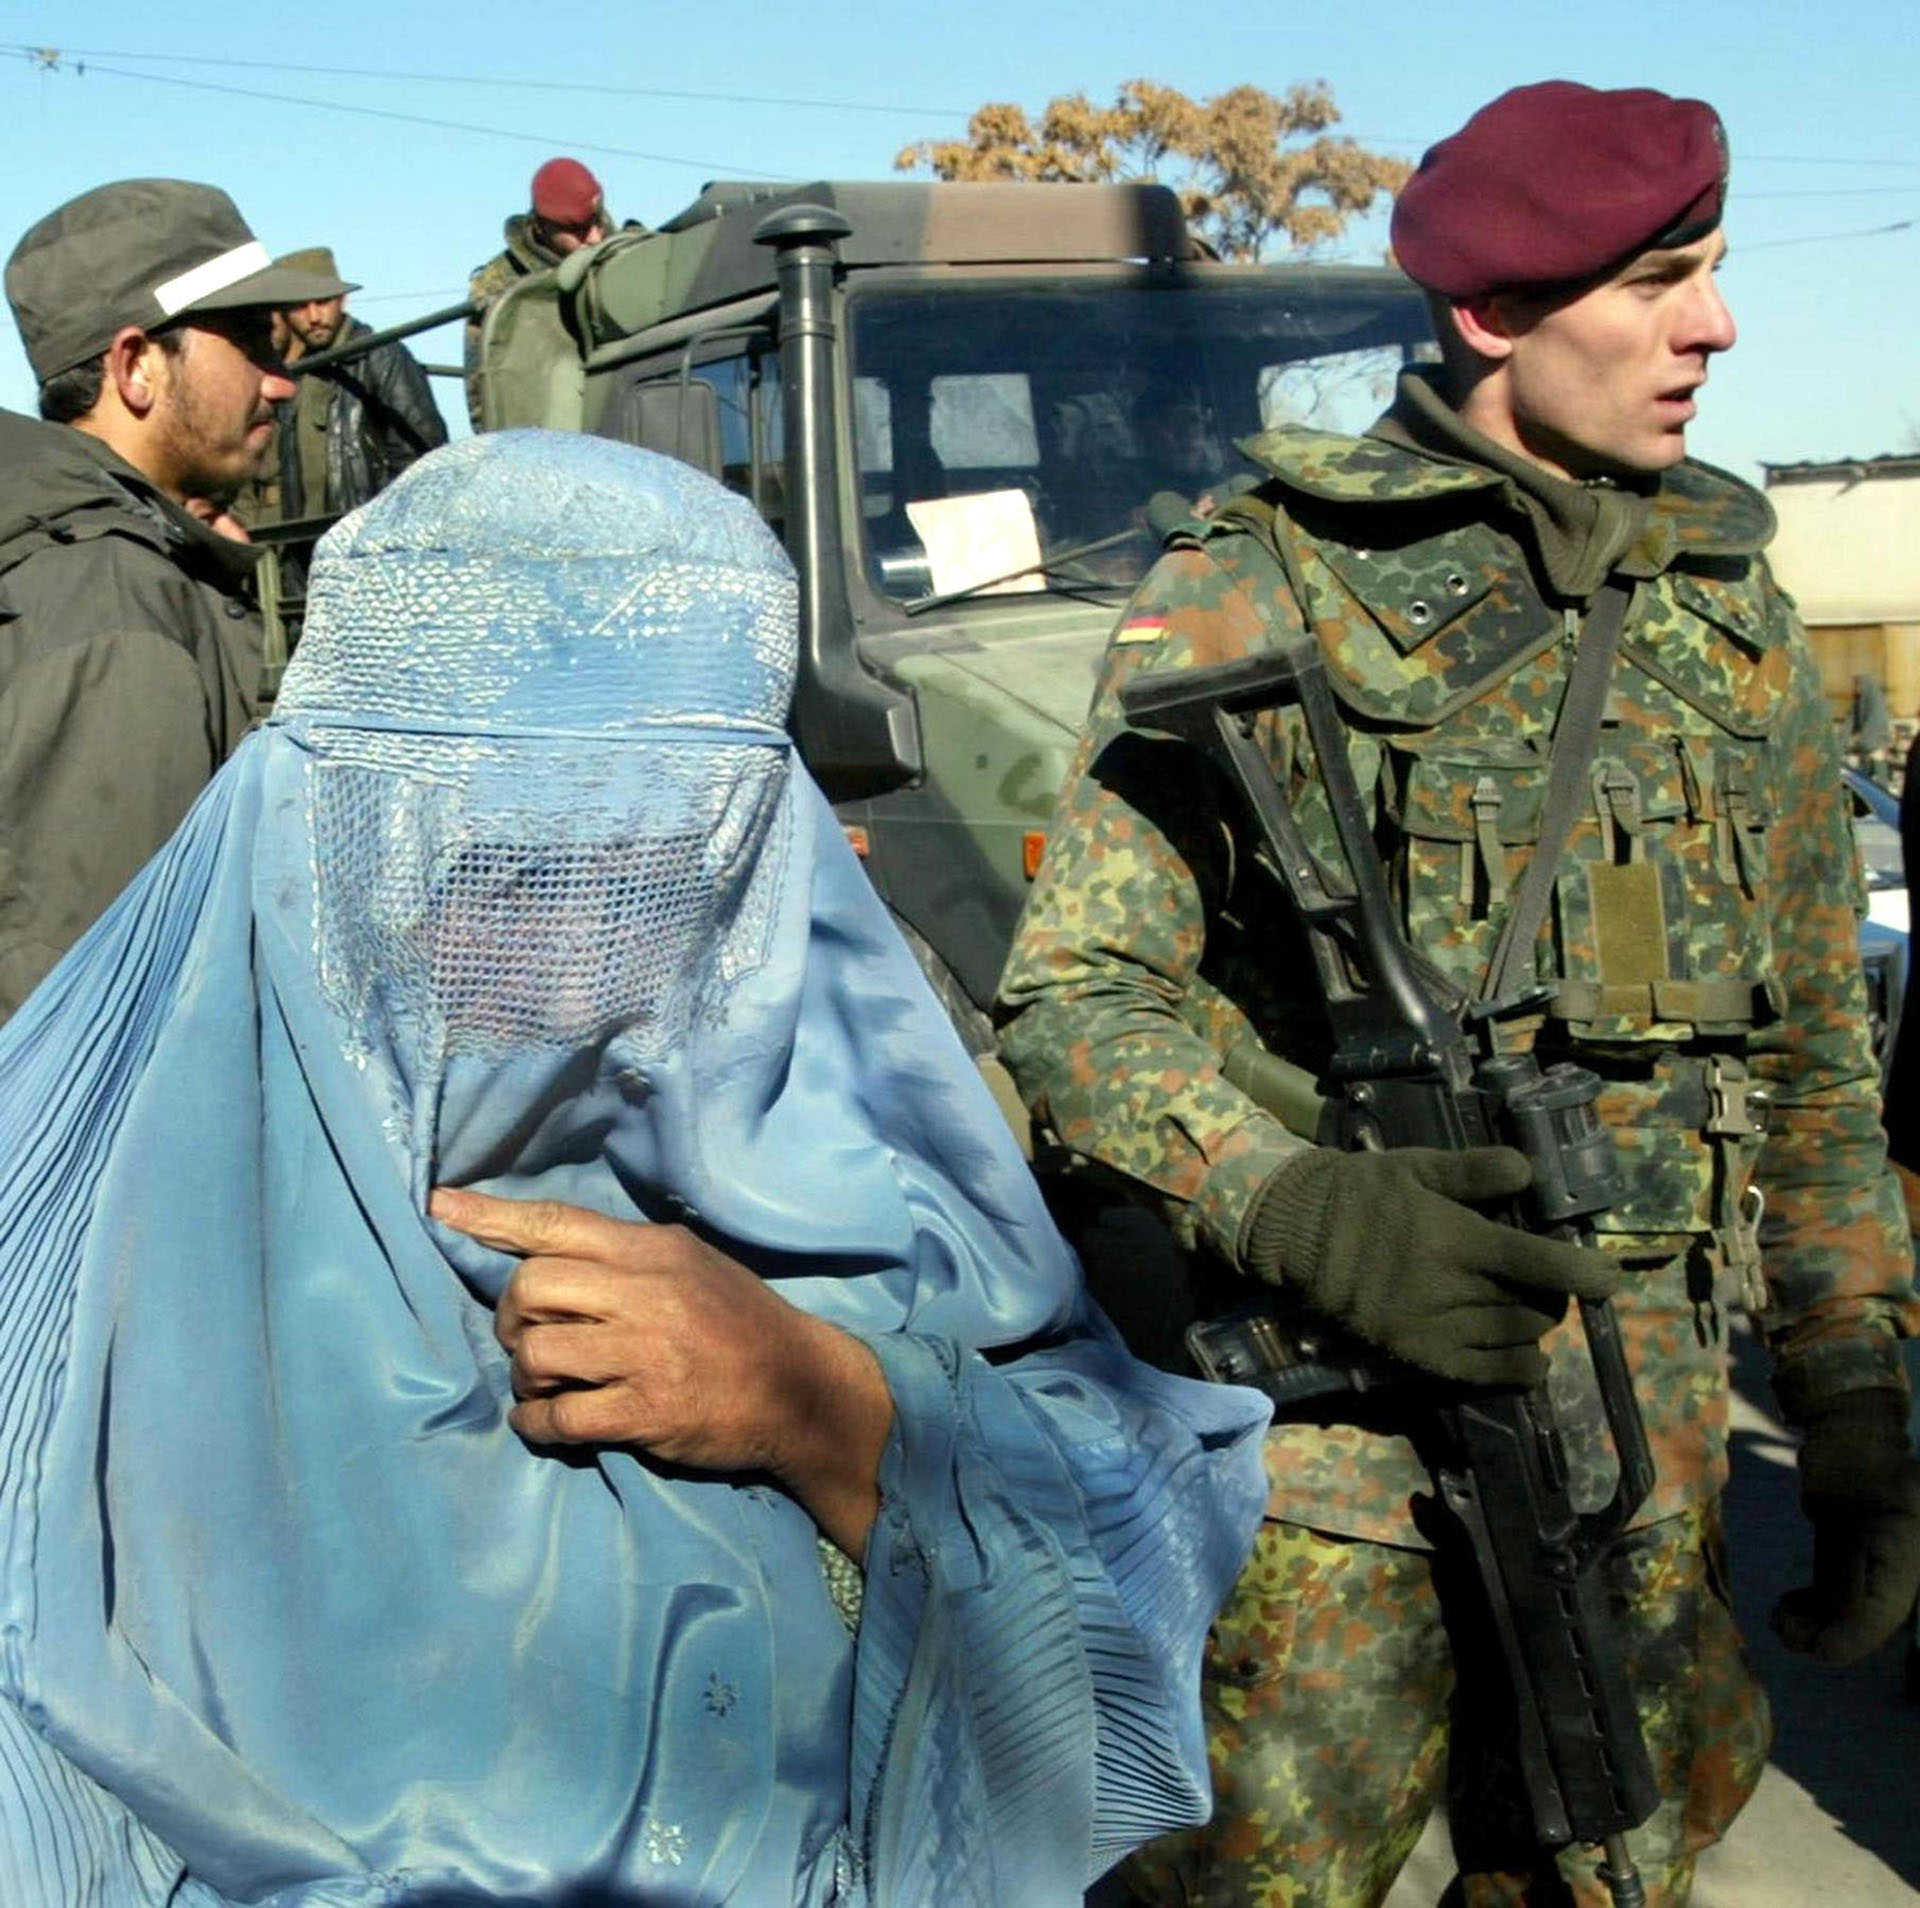 Fotografía de 19 de enero de 2002 de soldados alemanes patrullando en el centro de Kabul mientras pasa una mujer. (AFP/ EPA / ANJA NIEDRINGHAUS)